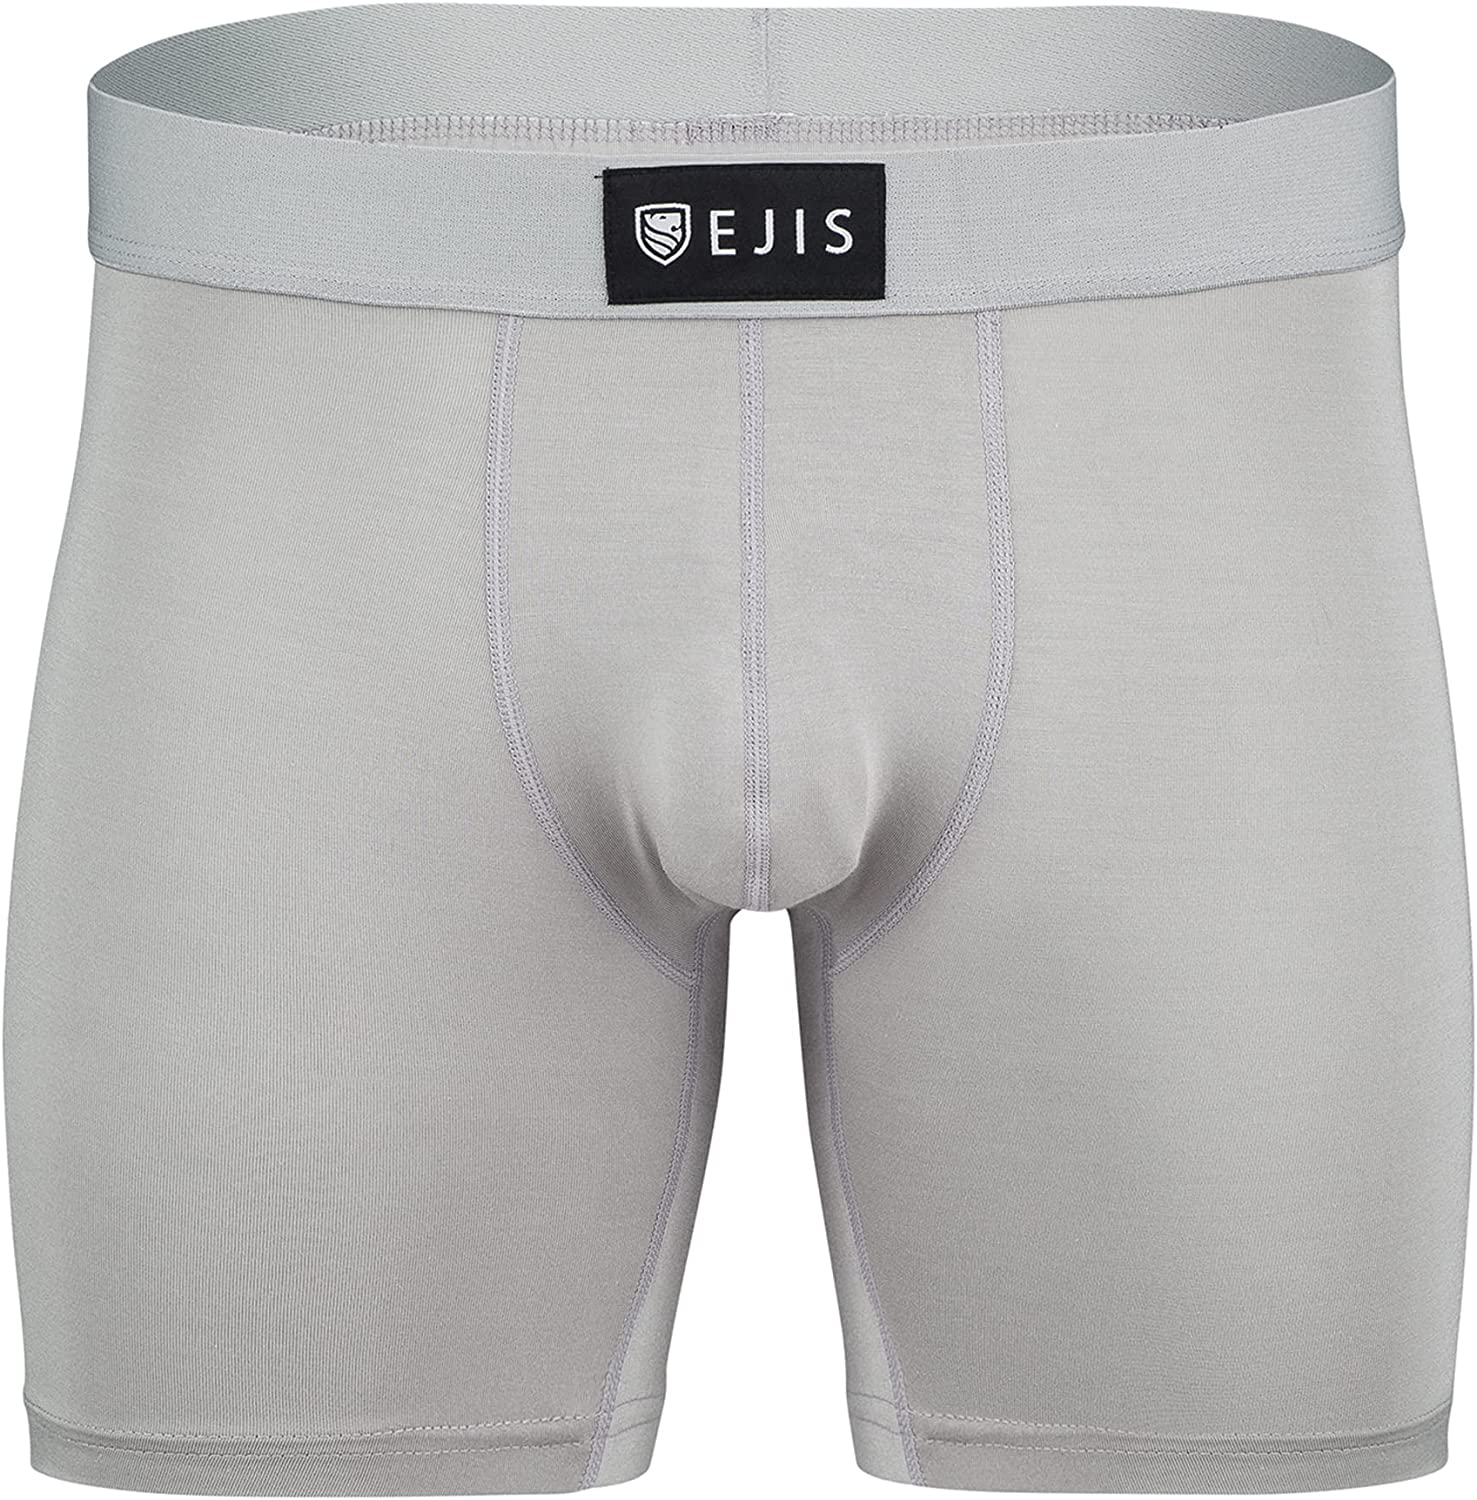 Ejis Sweatproof Mens Boxer Briefs Modal Pouch Underwear w Sweat